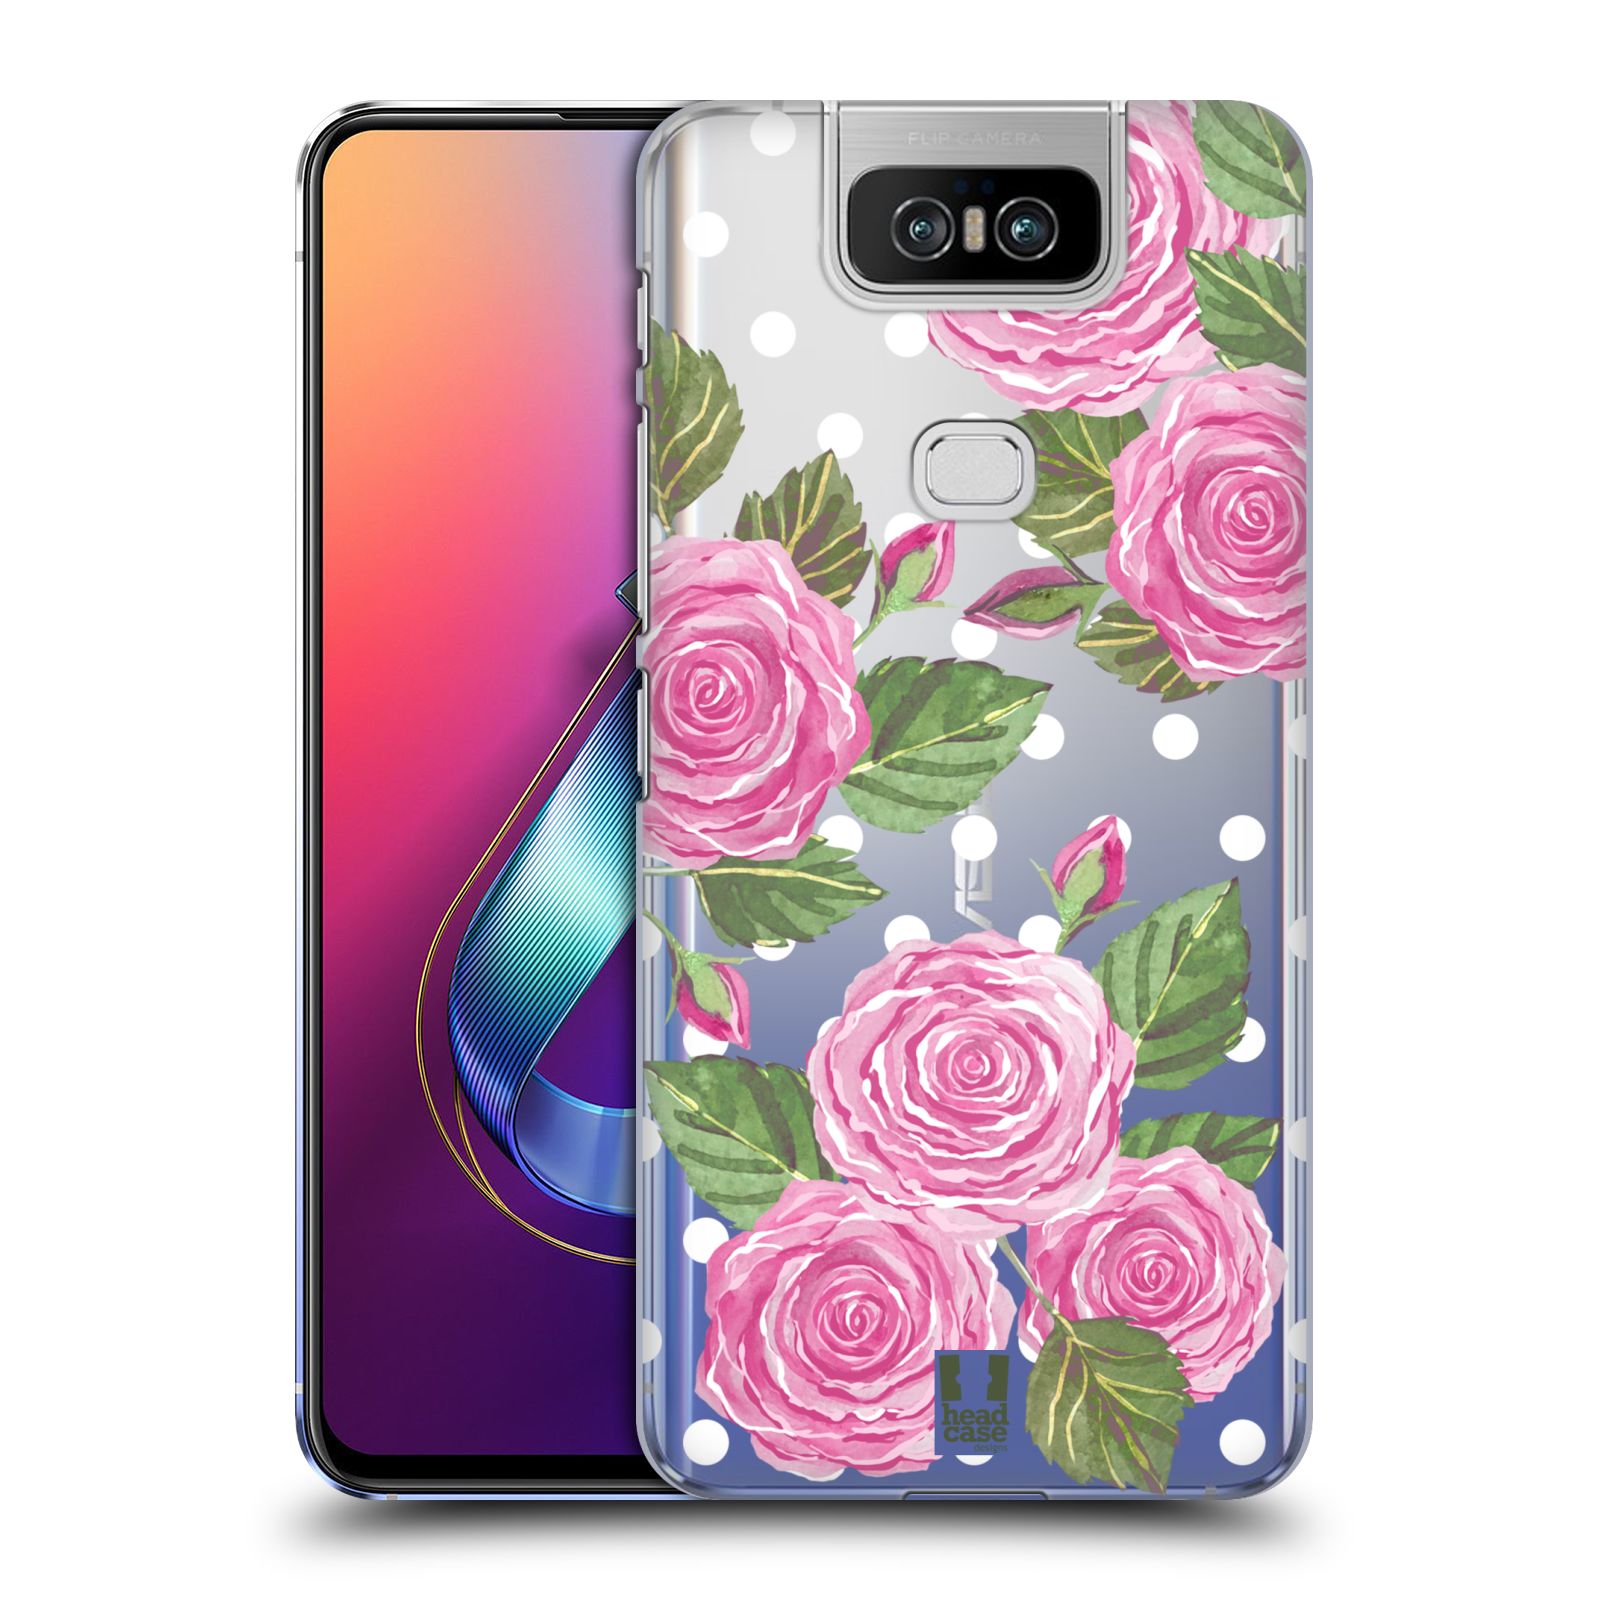 Pouzdro na mobil Asus Zenfone 6 ZS630KL - HEAD CASE - Anglické růže růžová barva